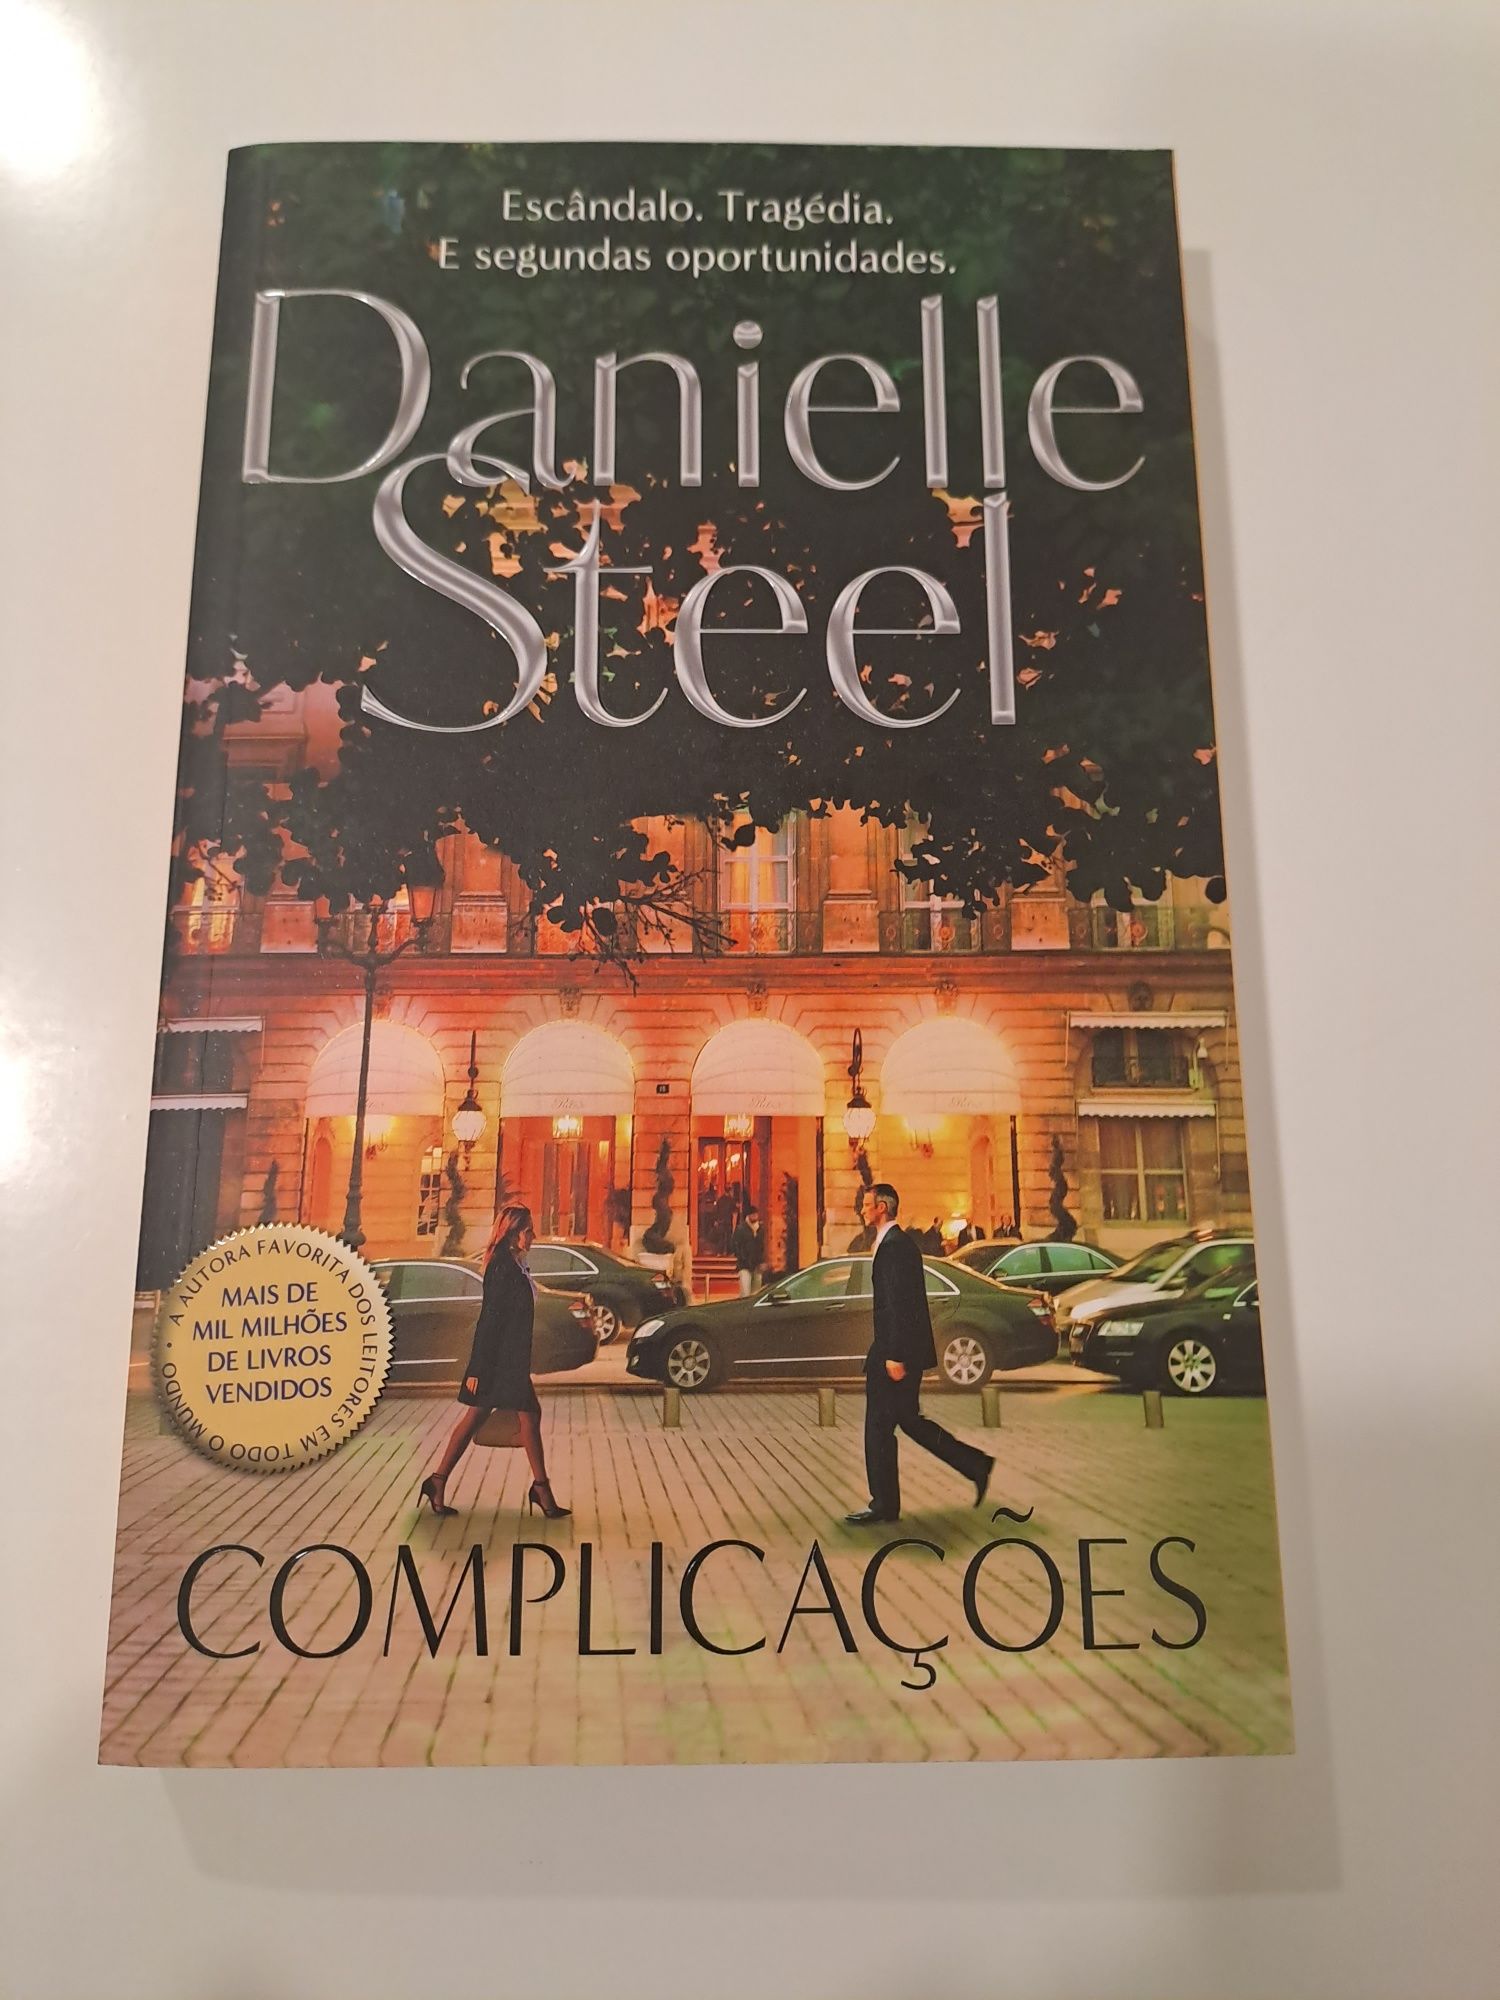 Danielle steel - vários livros